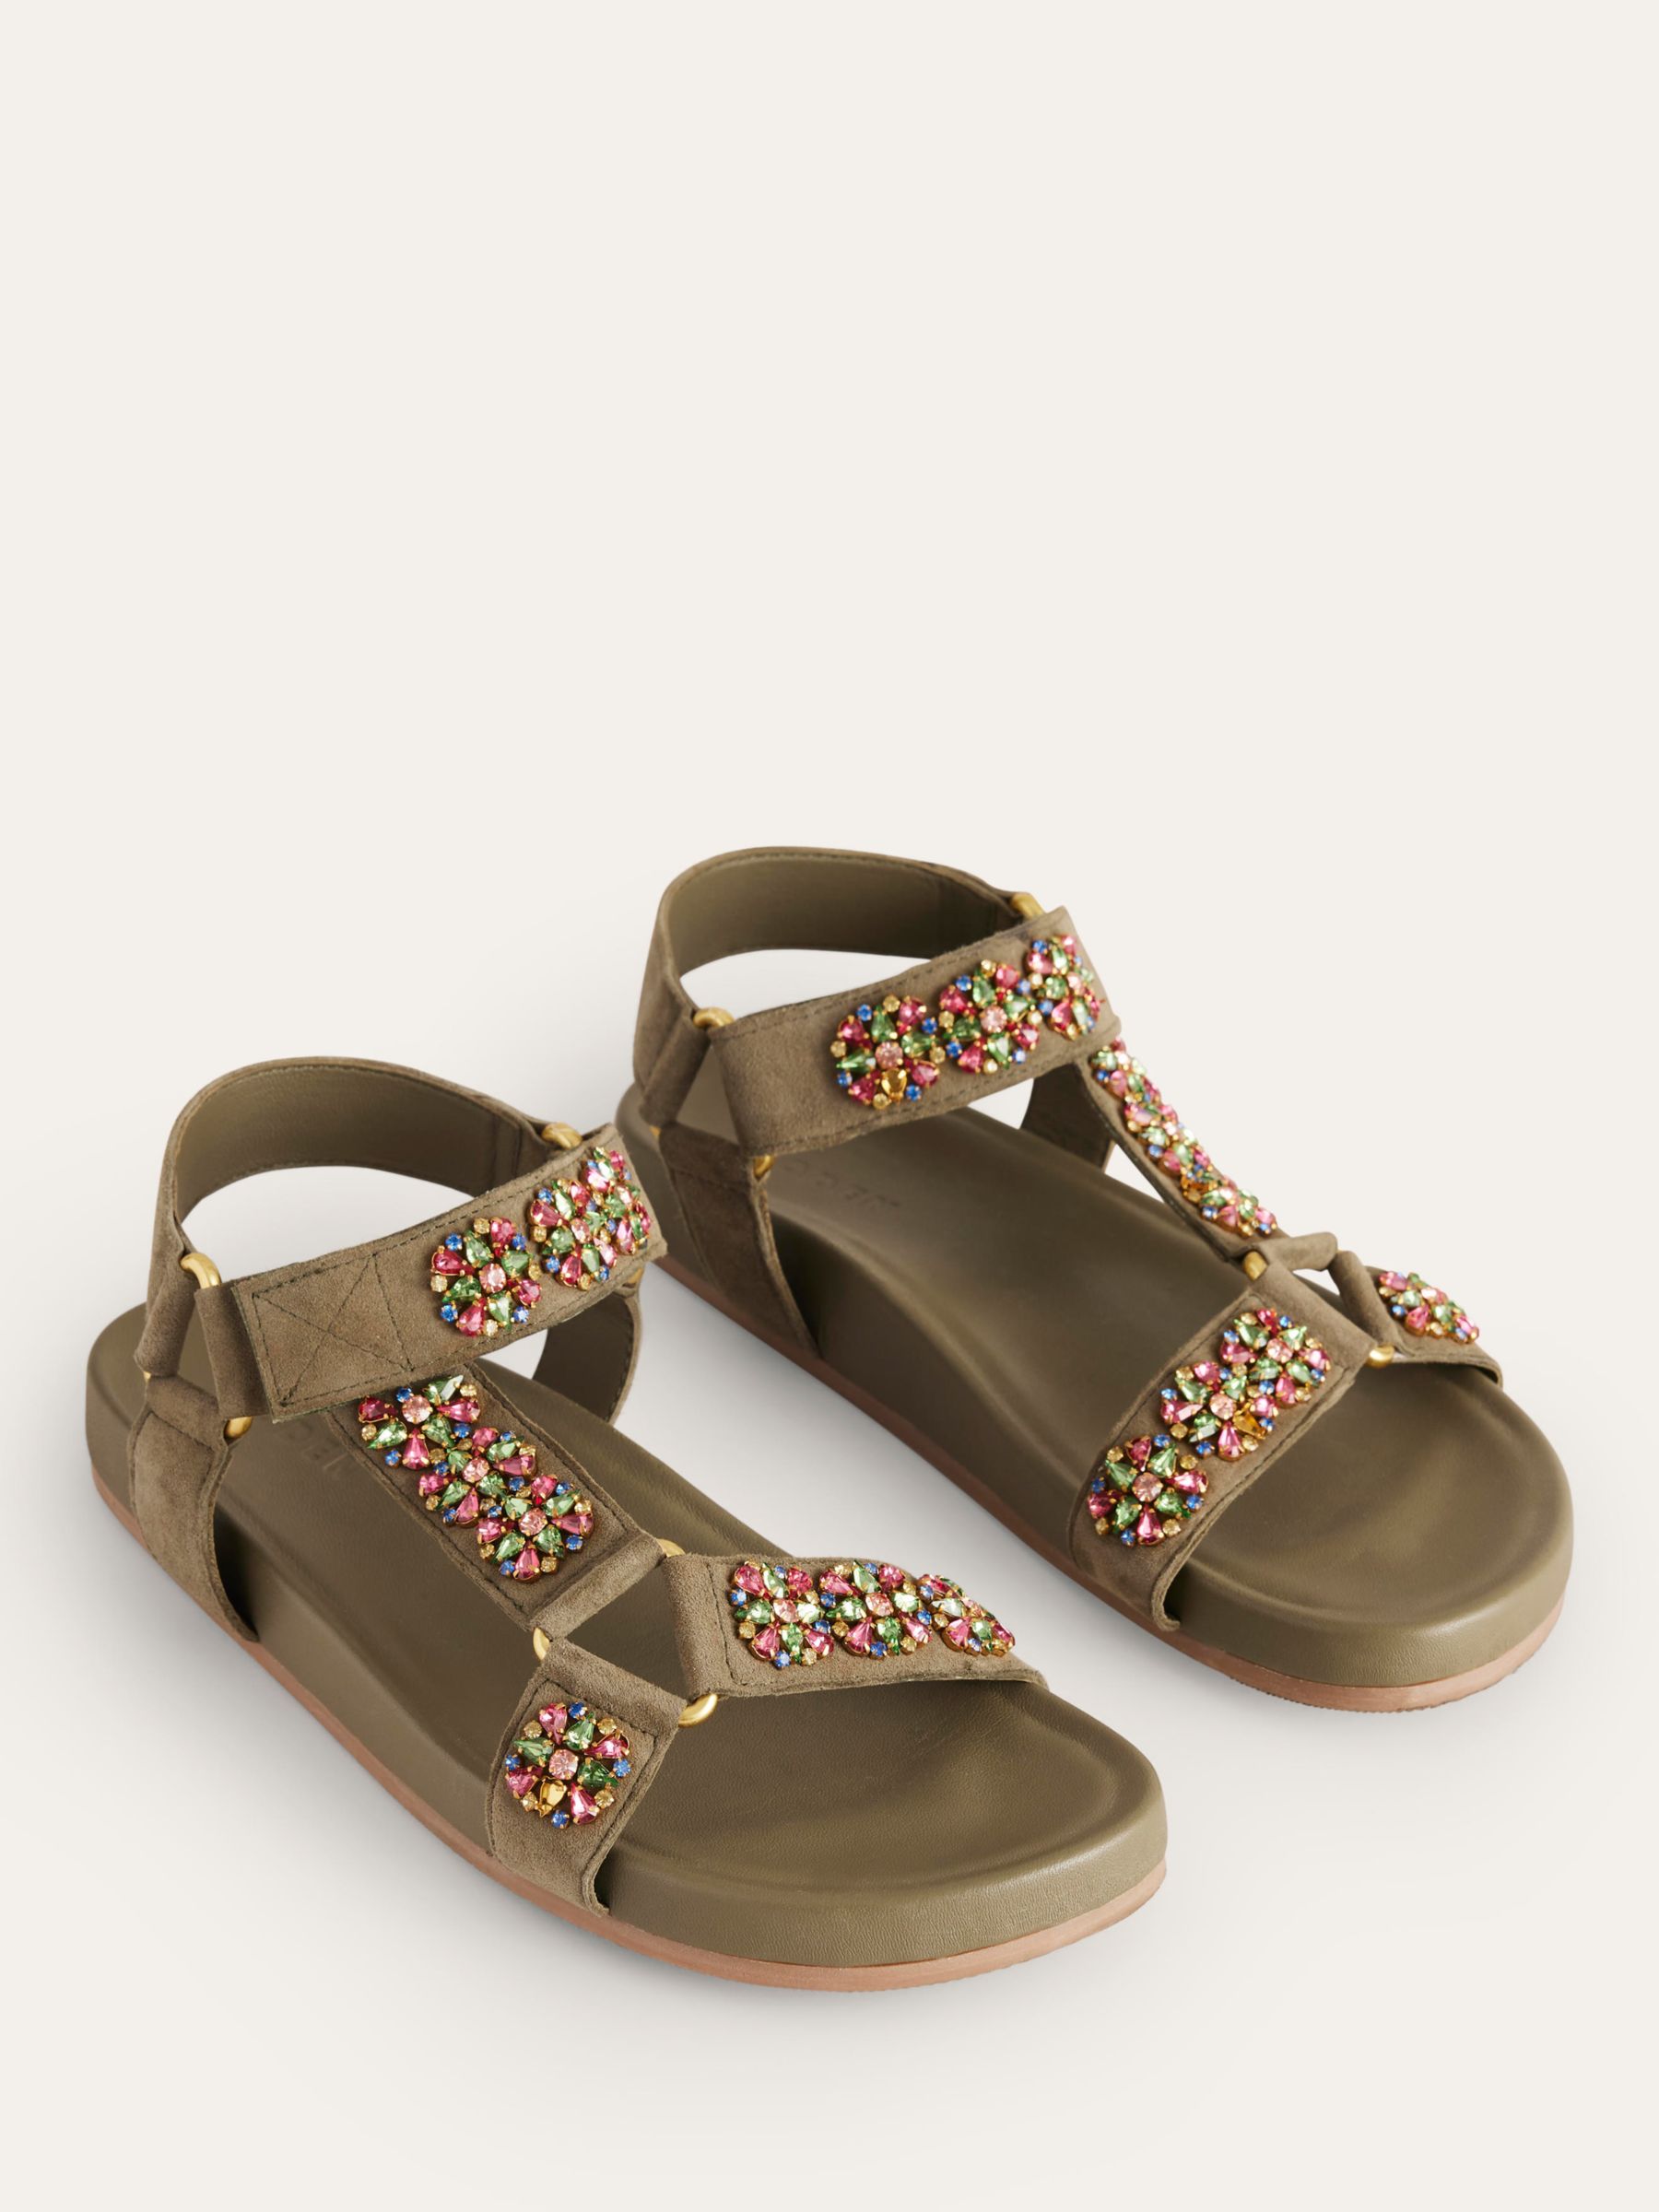 Boden Embellished Suede Trek Style Sandals, Deep Olive, 4